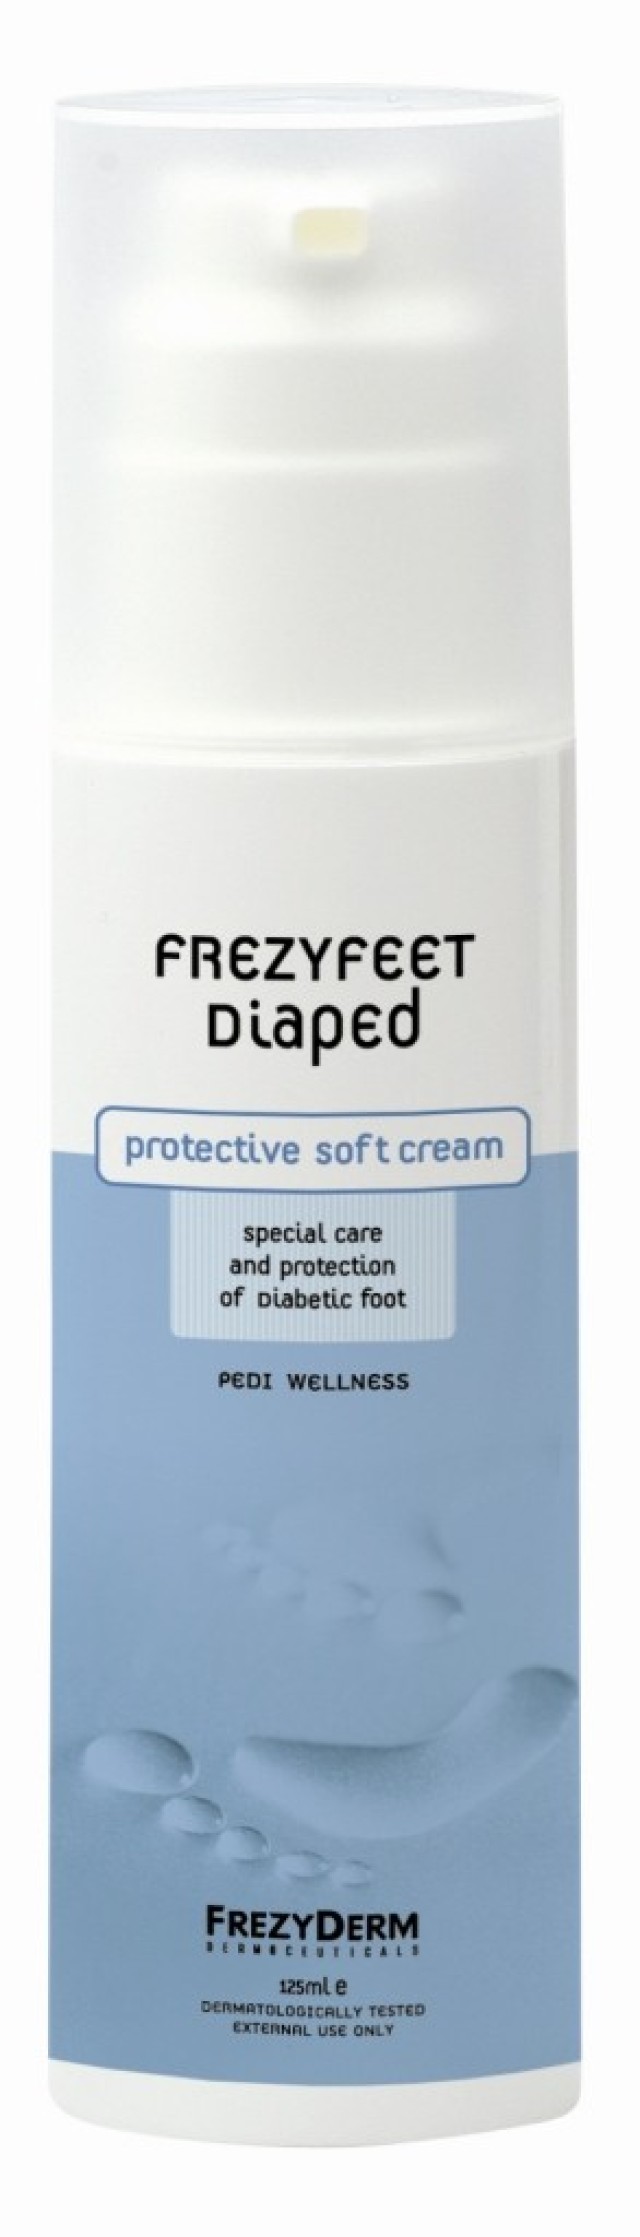 FrezyDerm FrezyFeet Diaped Cream Κρέμα Ποδιών για Διαβητικούς 125ml